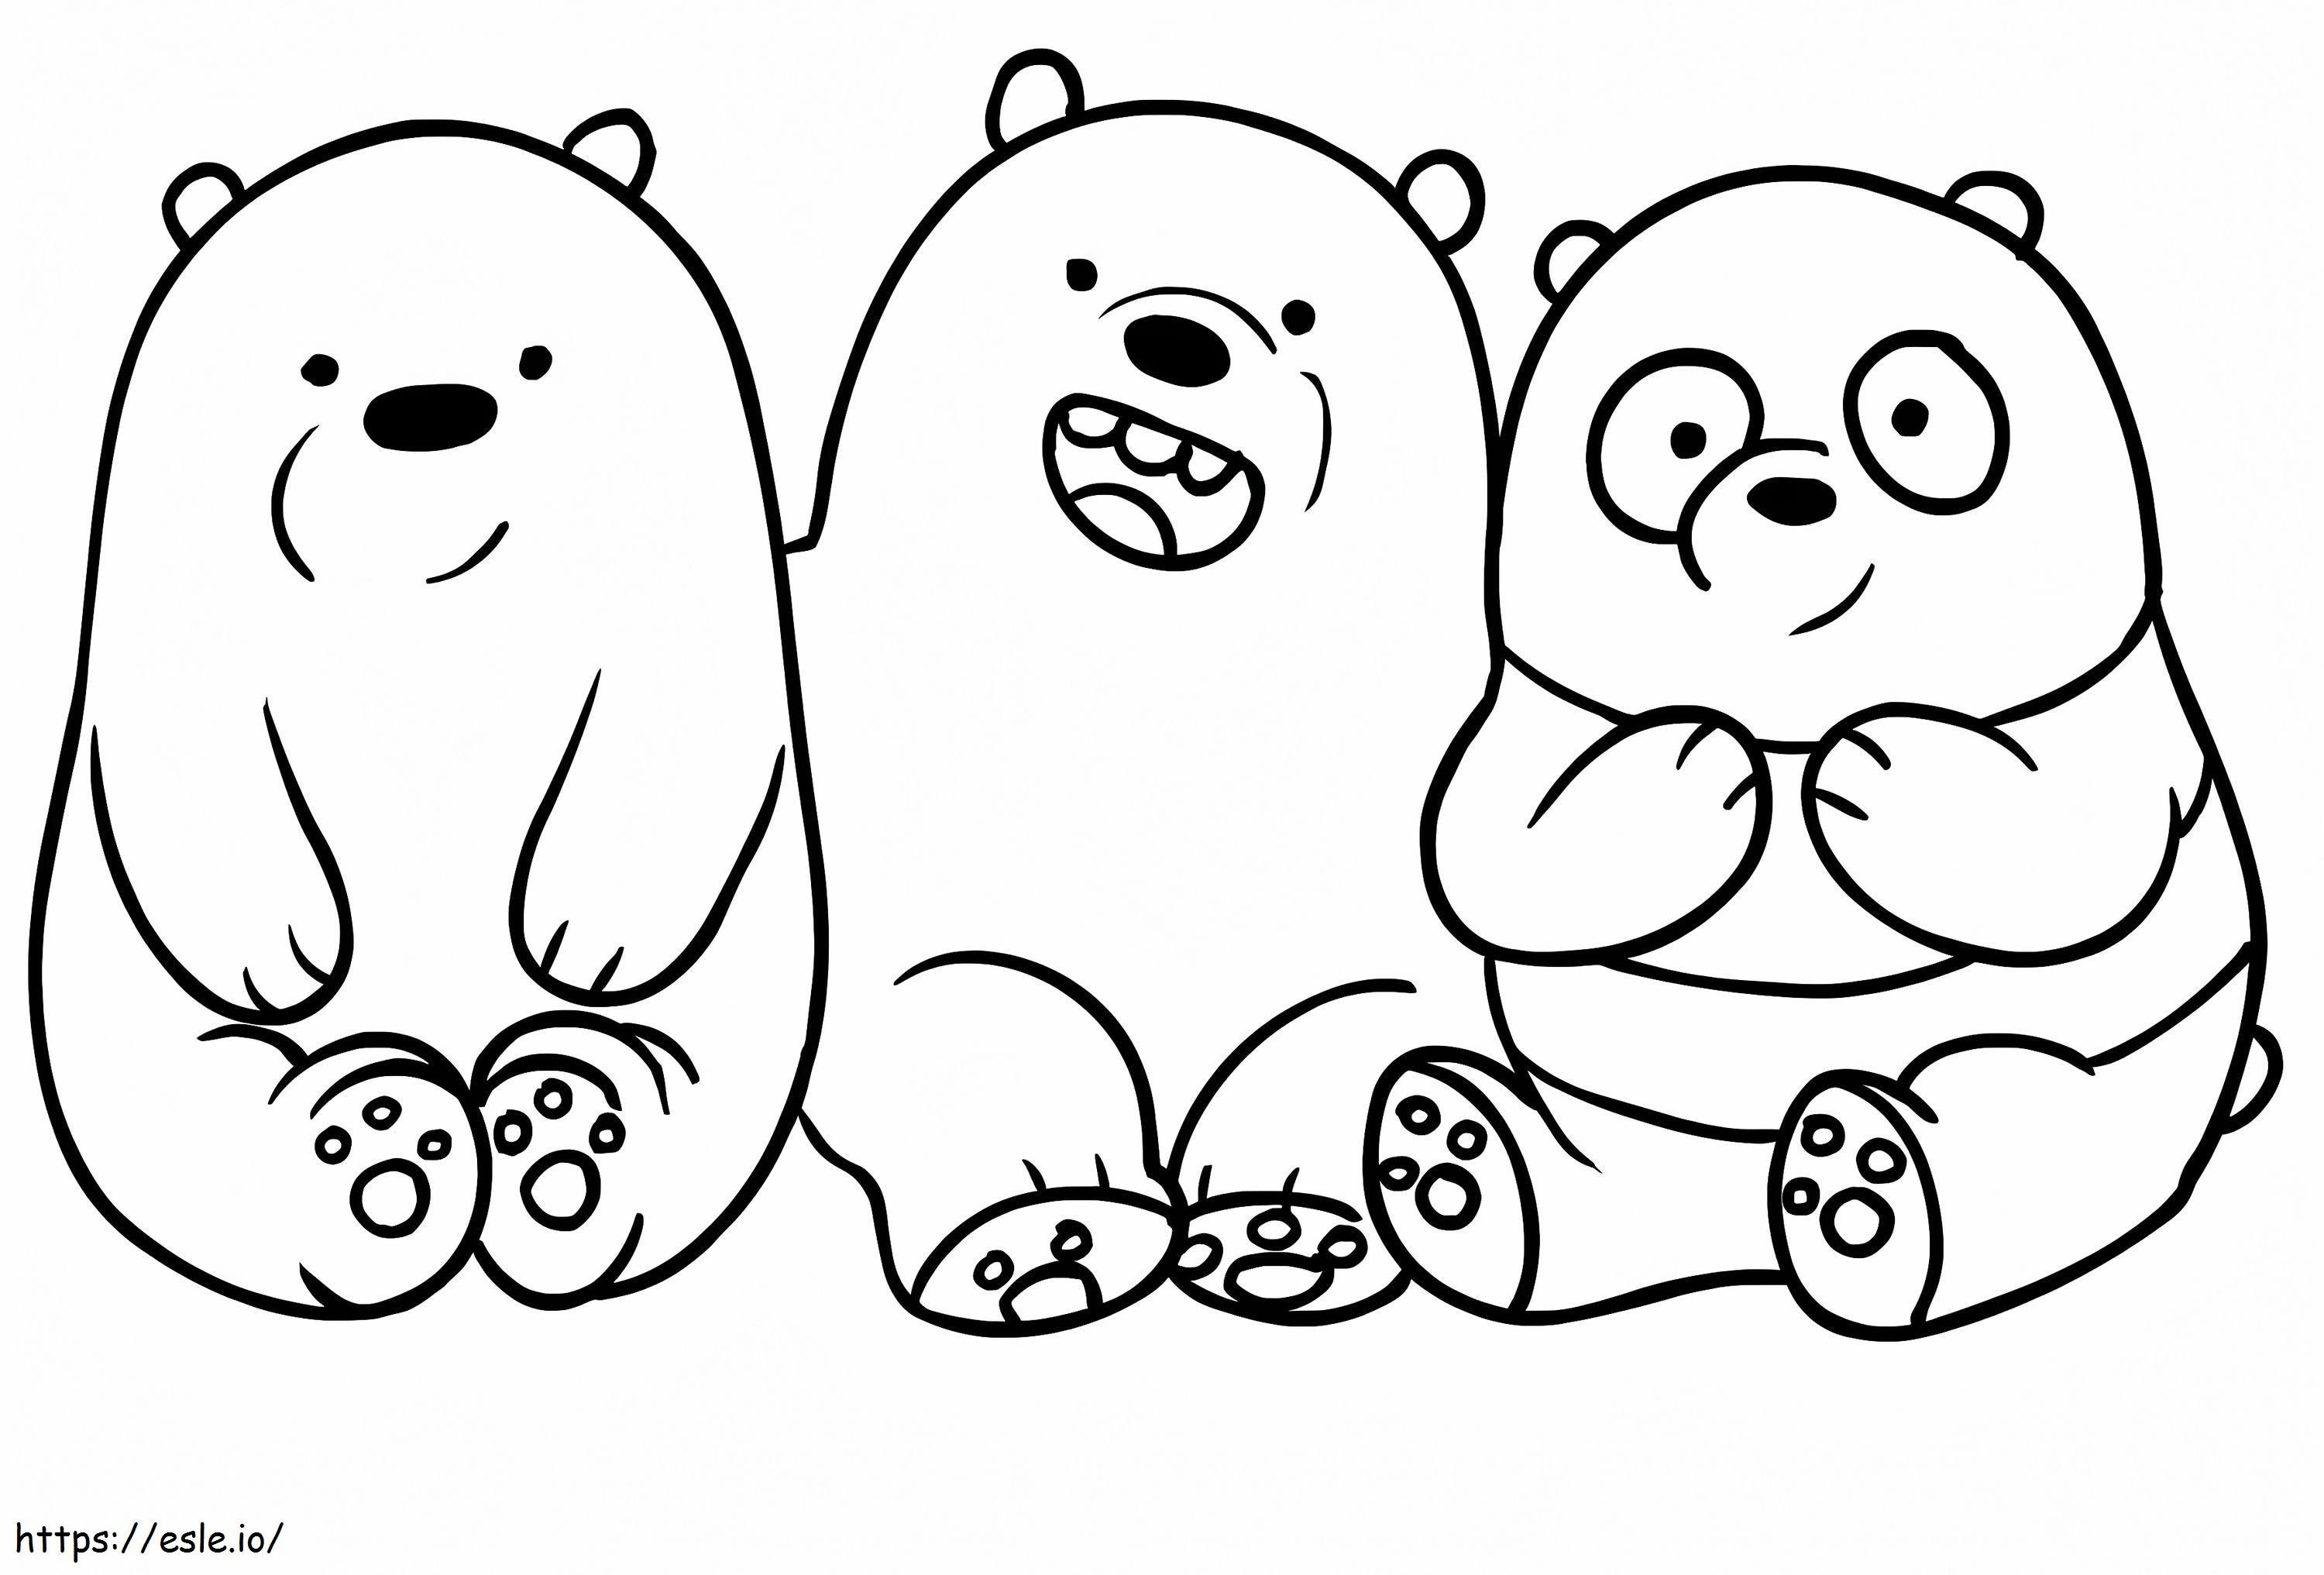 Drei sitzende Bären ausmalbilder